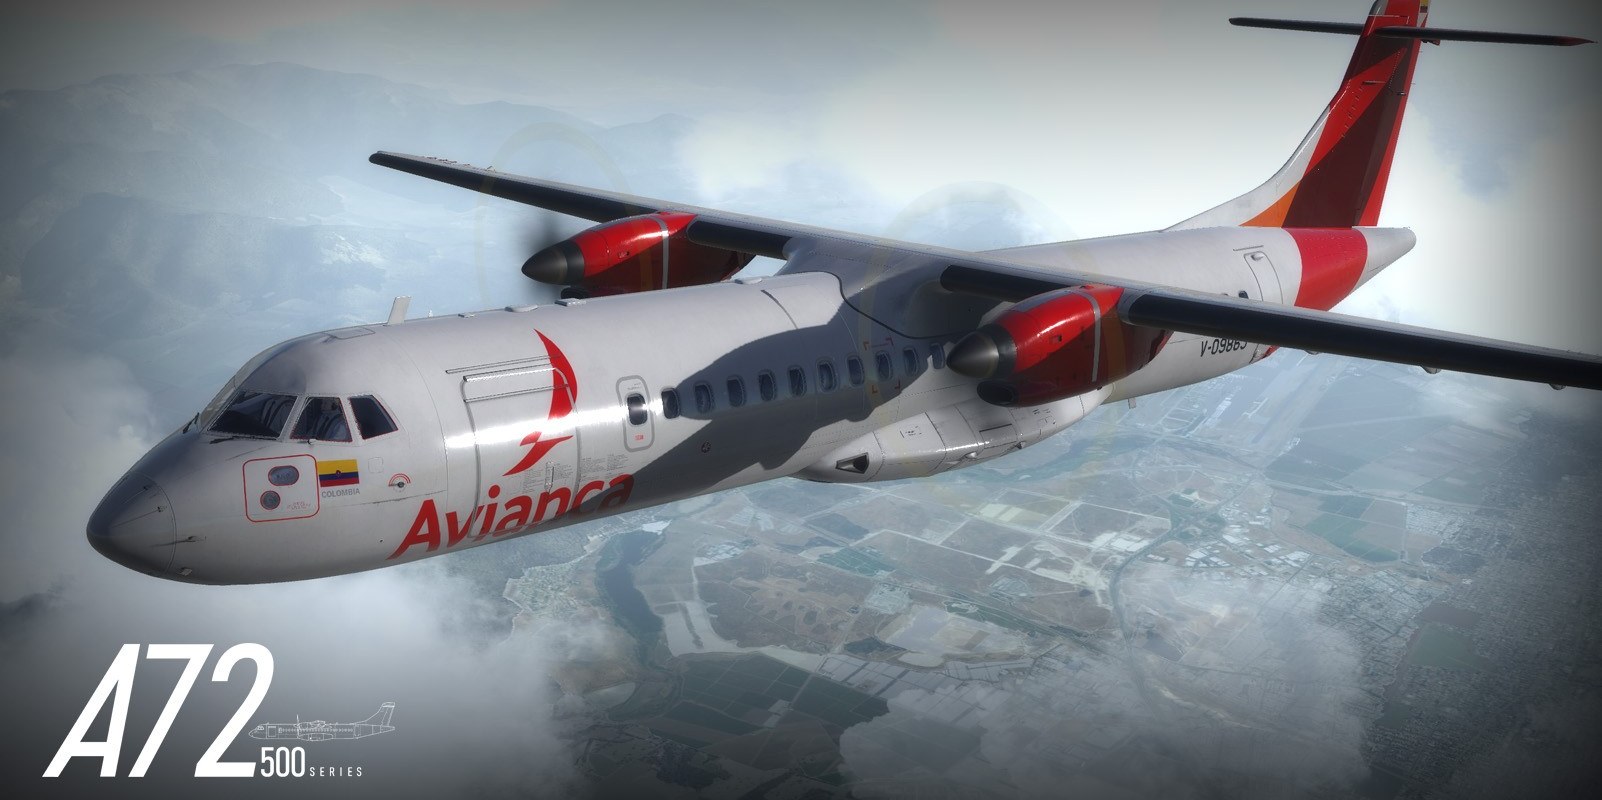 Carenado ATR 72 announced